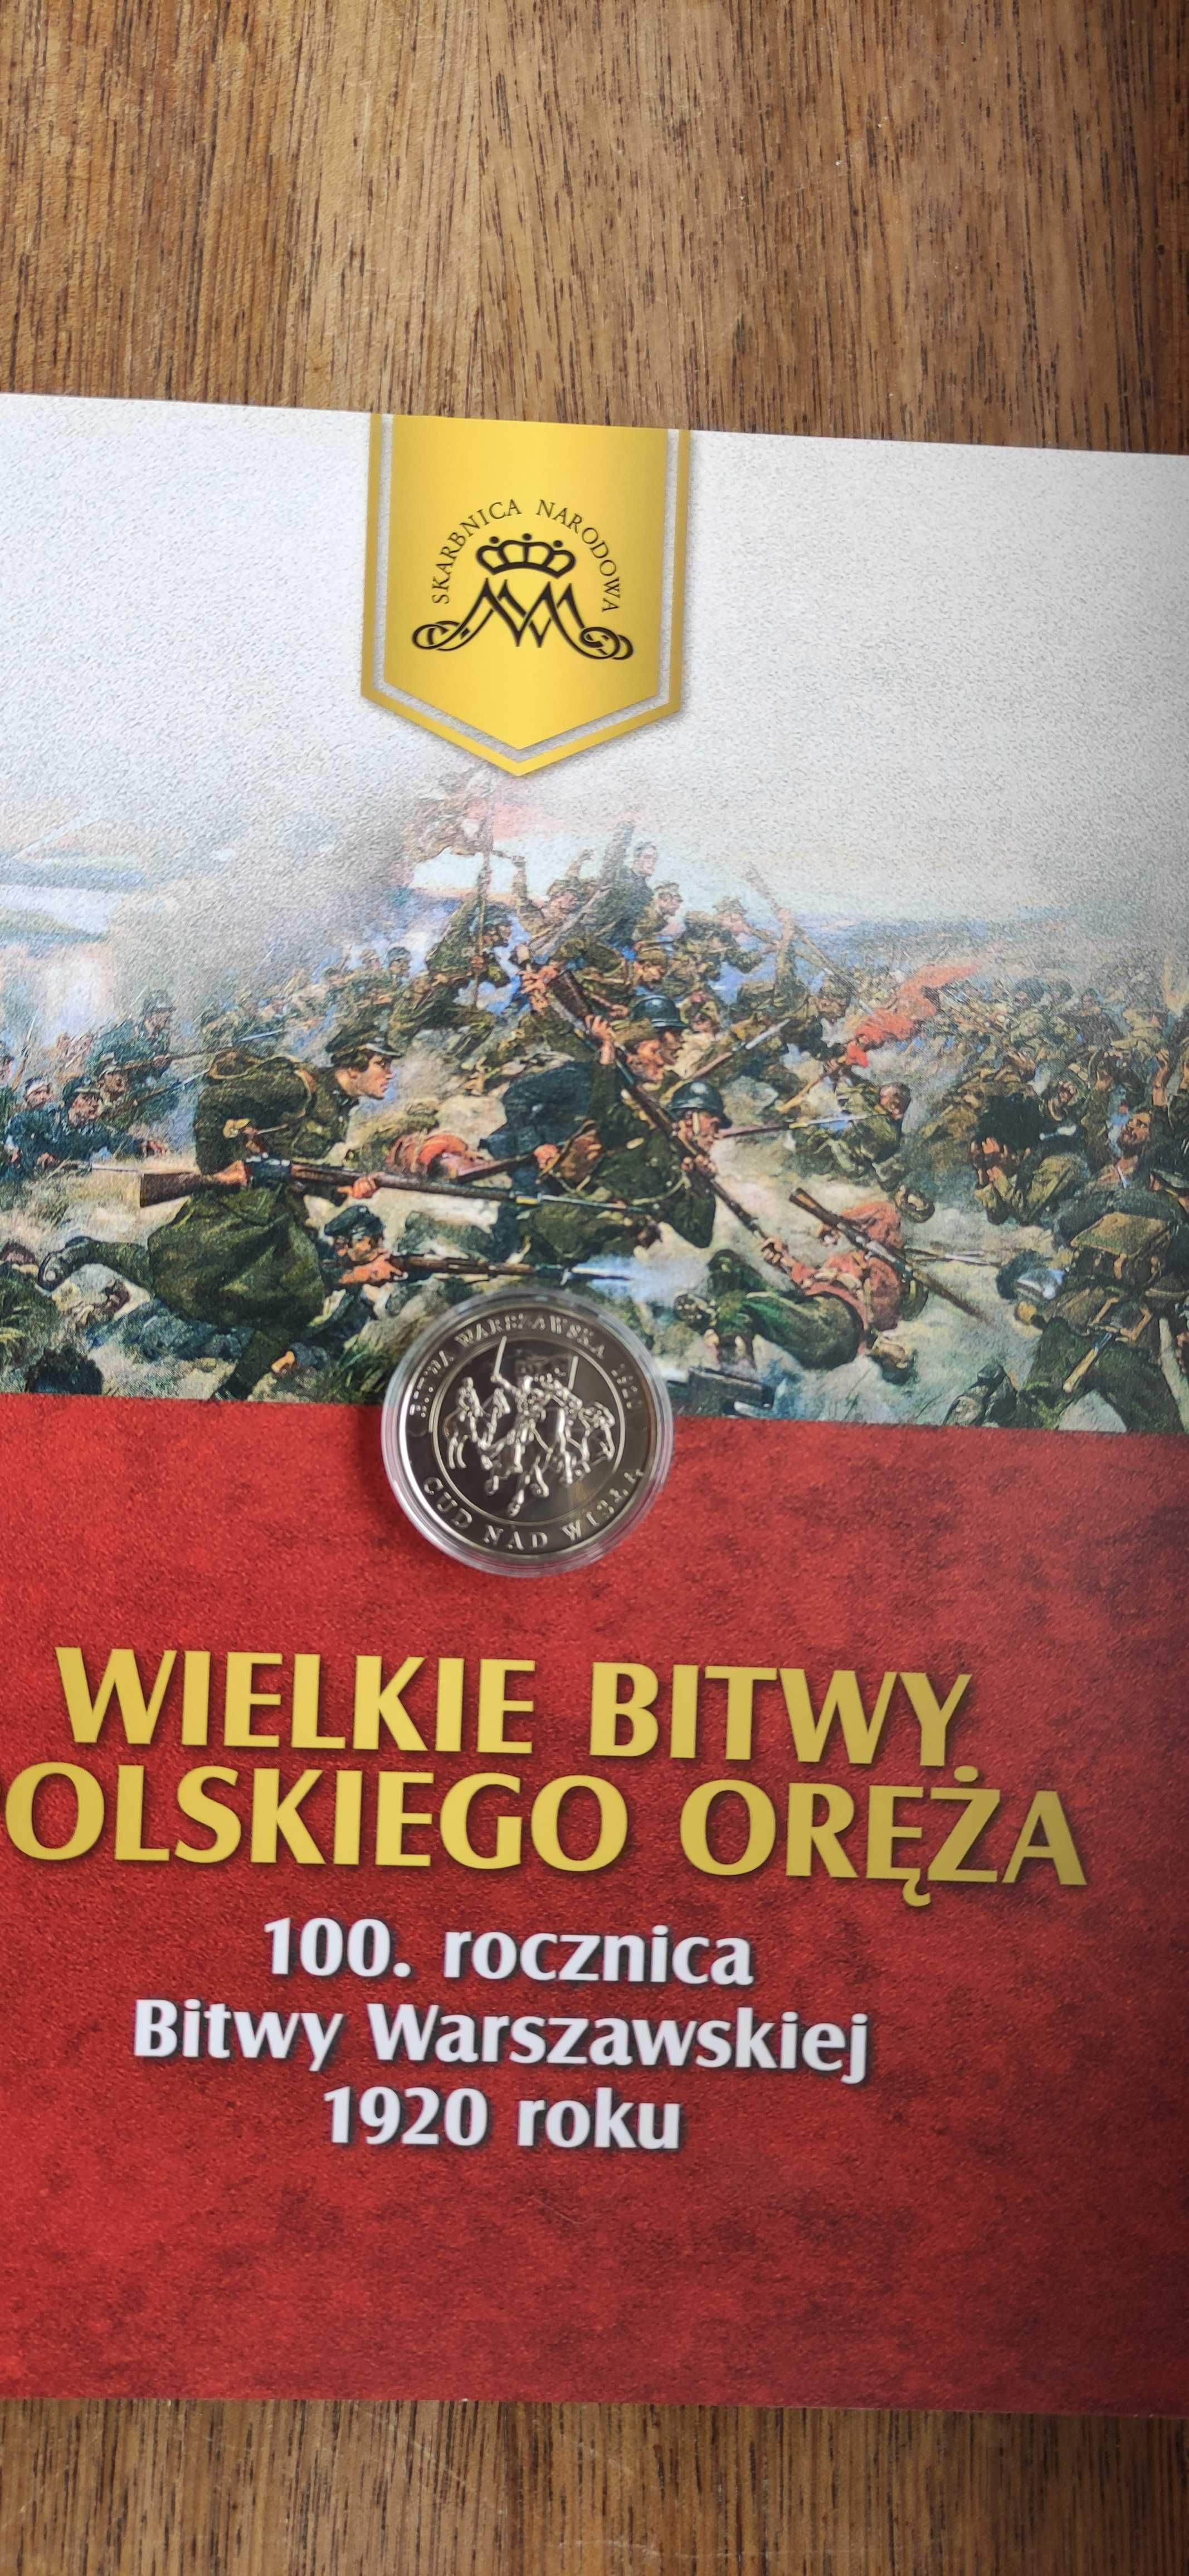 Medal "100. rocznica Bitwy Warszawskiej 1920 roku"